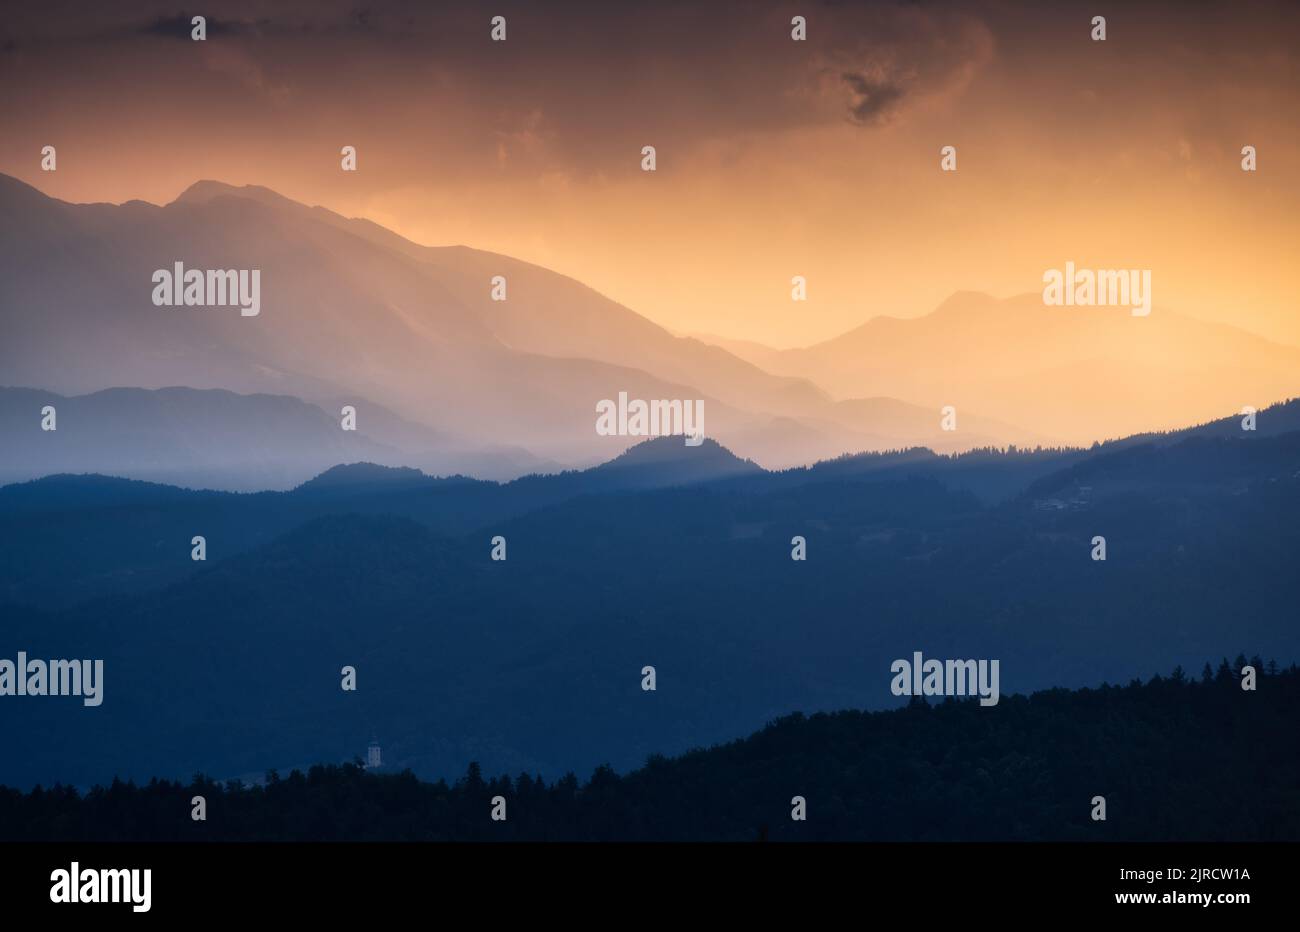 Splendide silhouette di una montagna al colorato tramonto d'estate Foto Stock